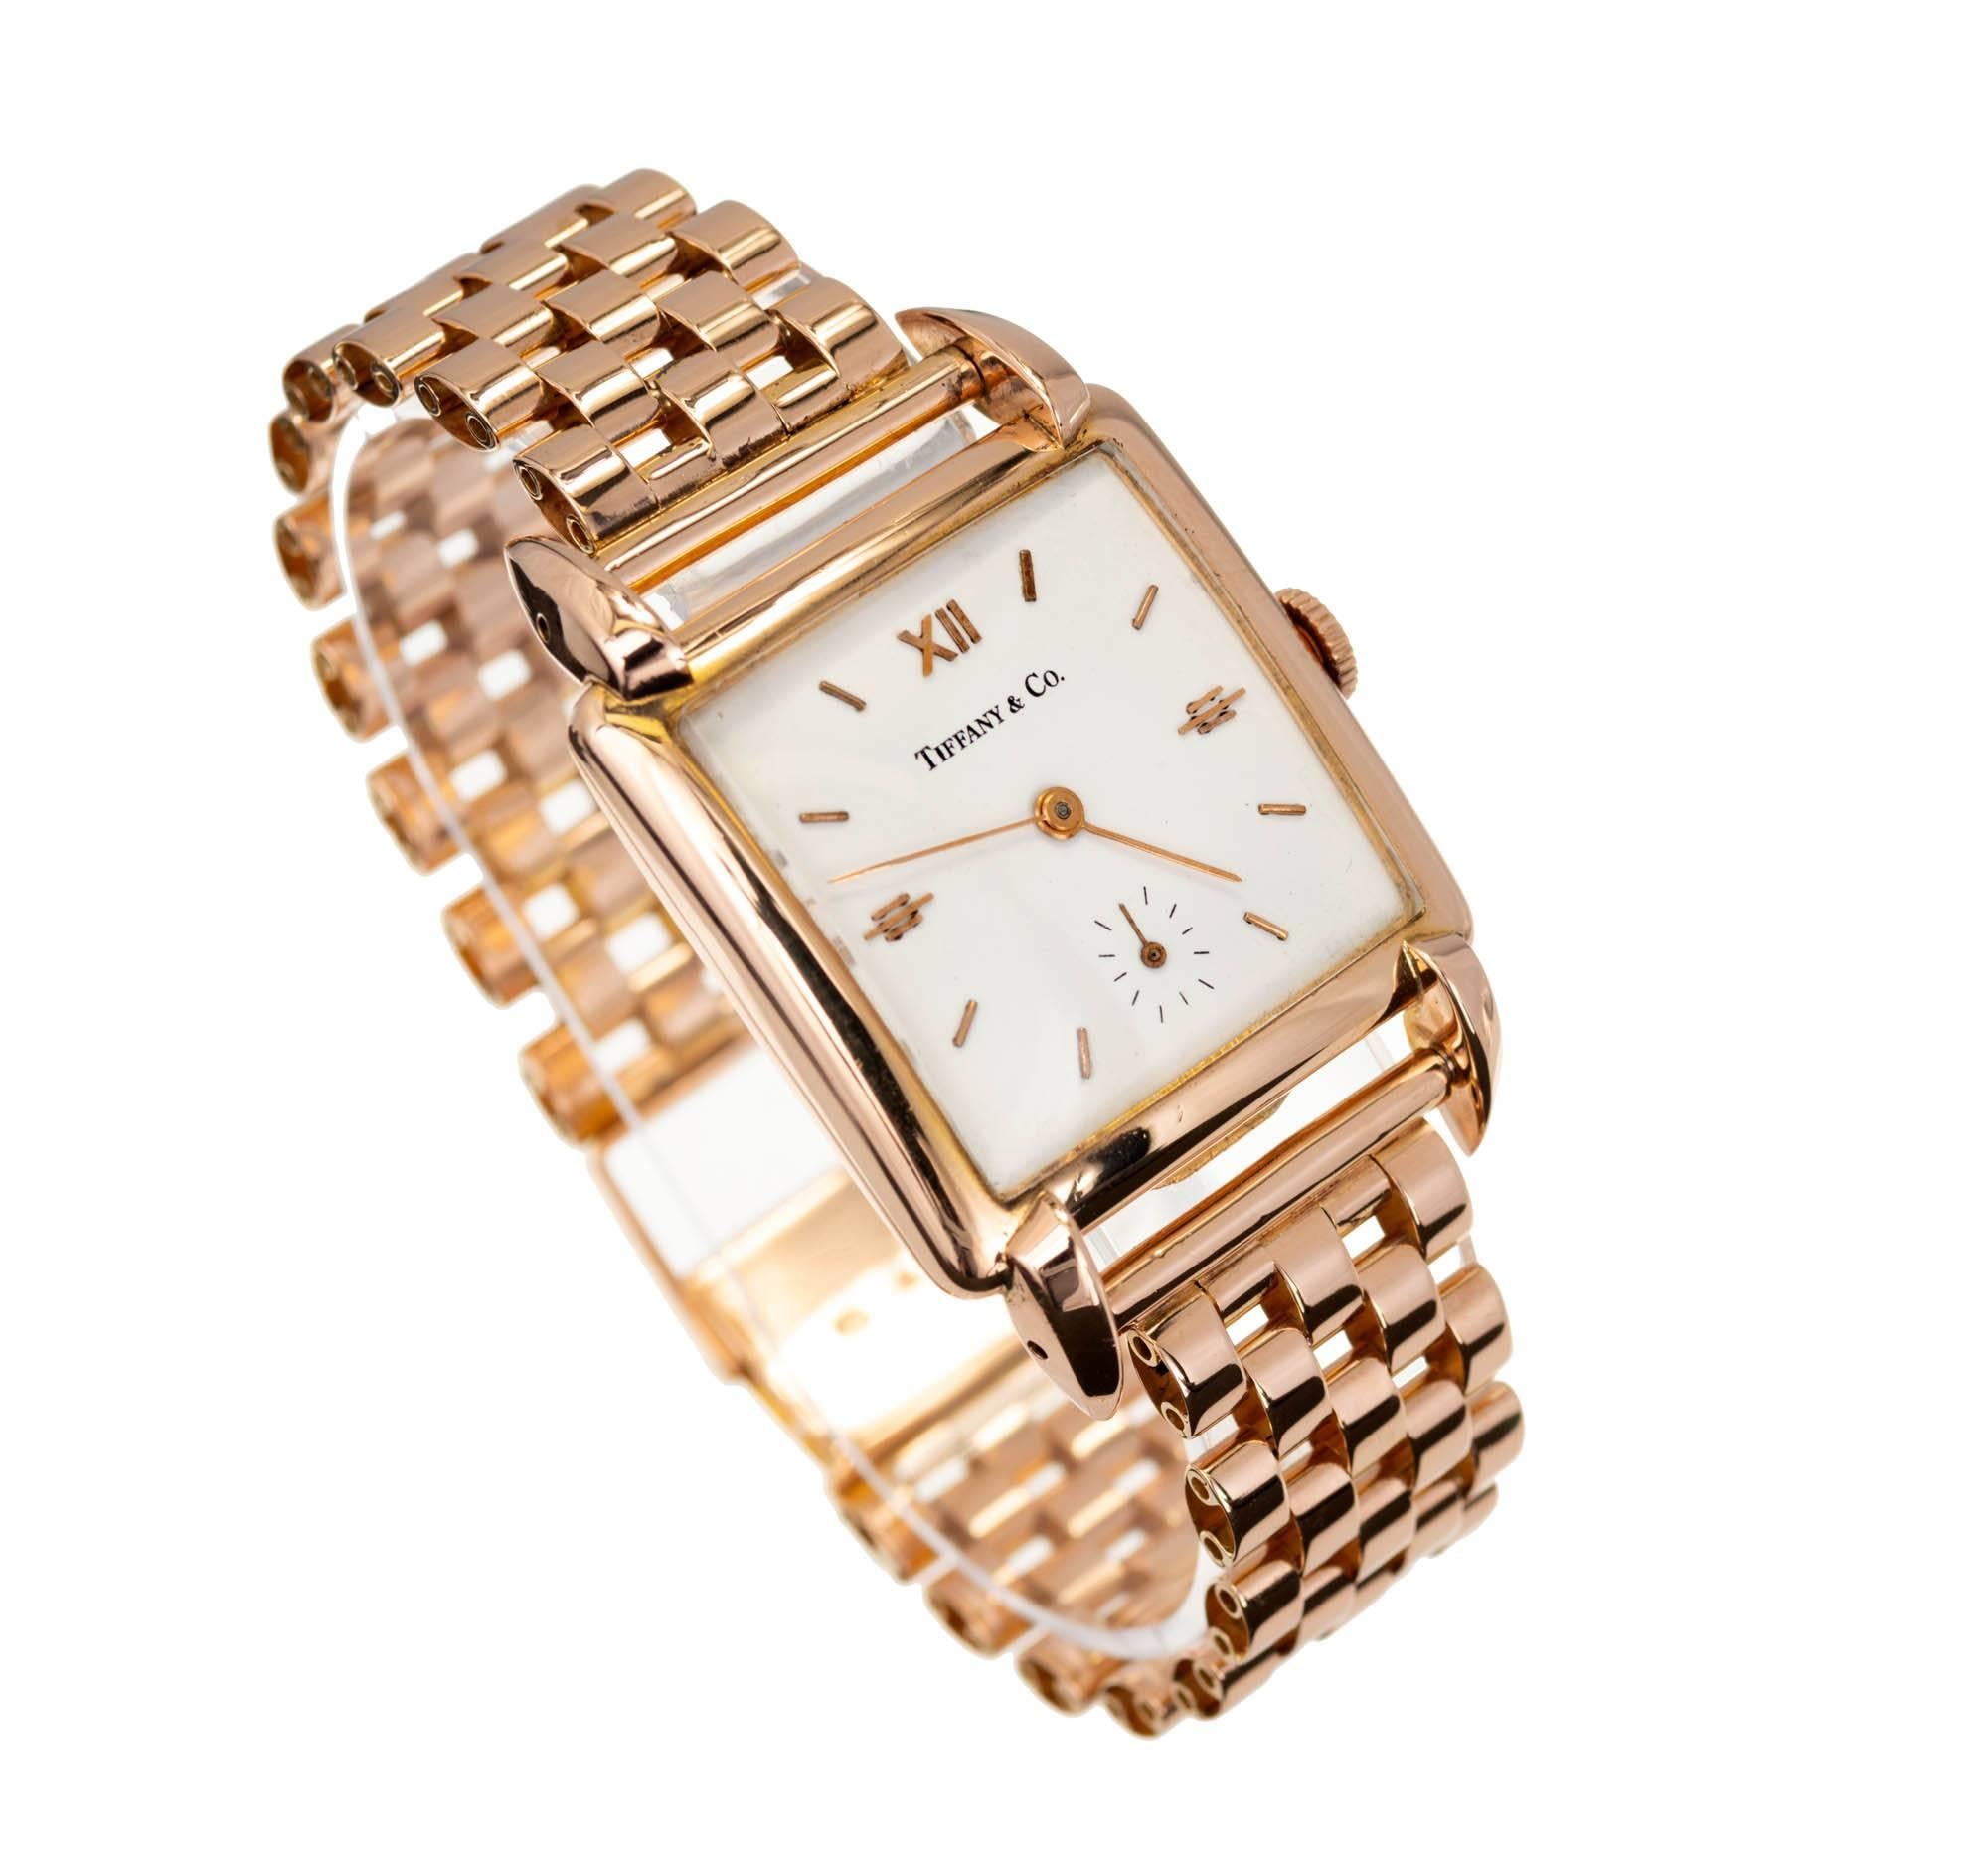 Montre-bracelet Universal Geneve en or rose 18 carats de Tiffany & Co. Universal Geneve a eu un partenariat avec Tiffany à la fin des années 1940 et dans les années 1950. À cette époque, les montres de la marque maison Tiffany étaient produites avec